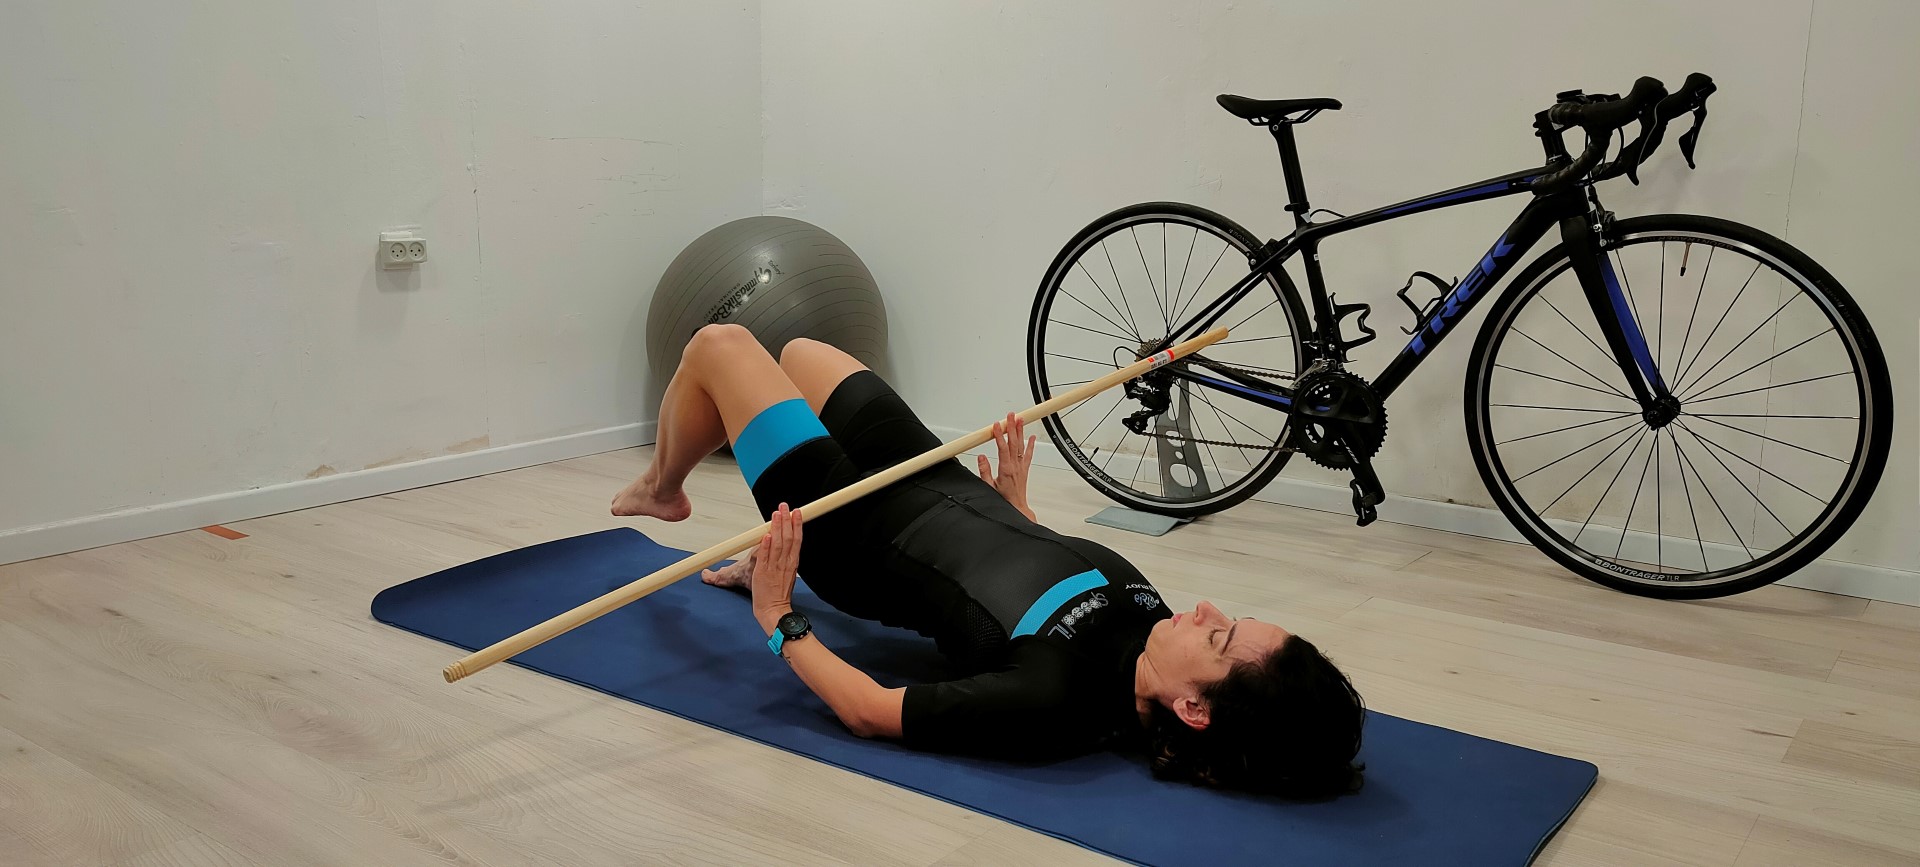 בריאות- כאבי ברכיים ברכיבת אופניים, חלק 2- תוכנית תרגילים